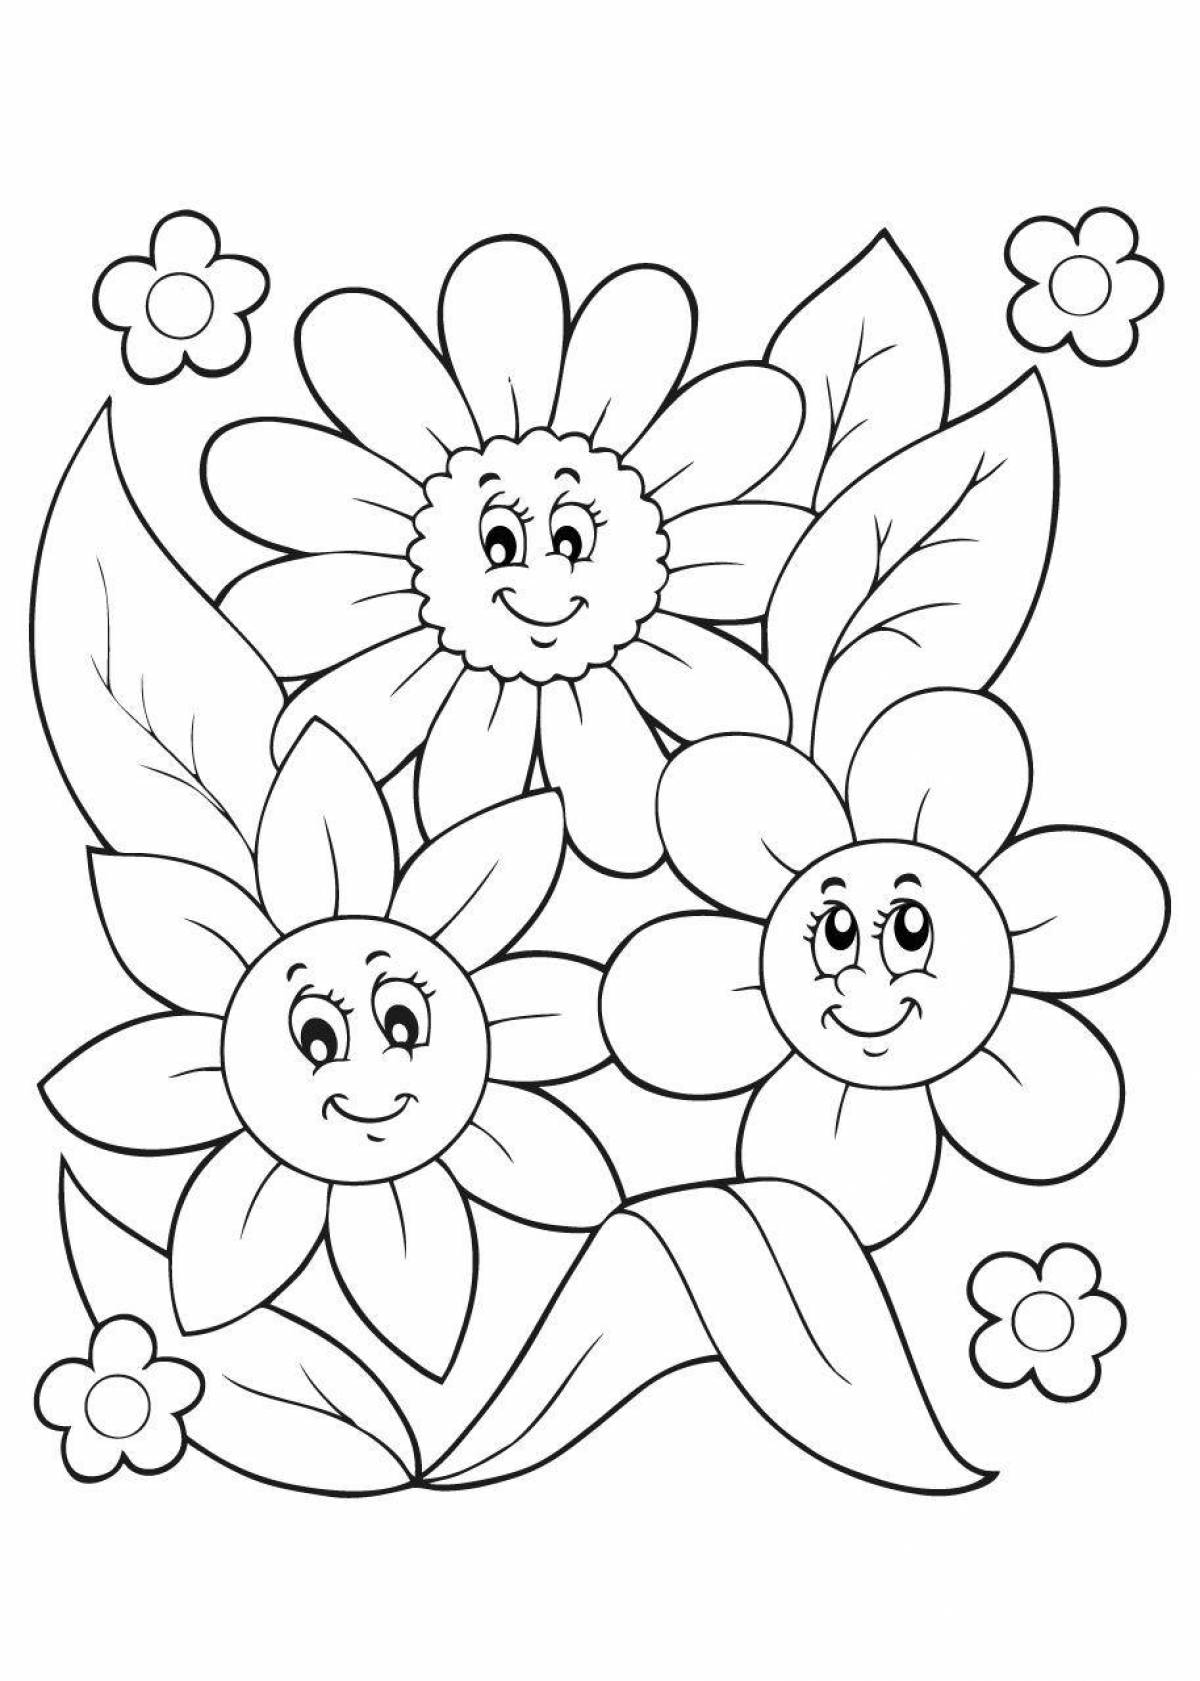 Лучистая раскраска цветы для детей 7 лет